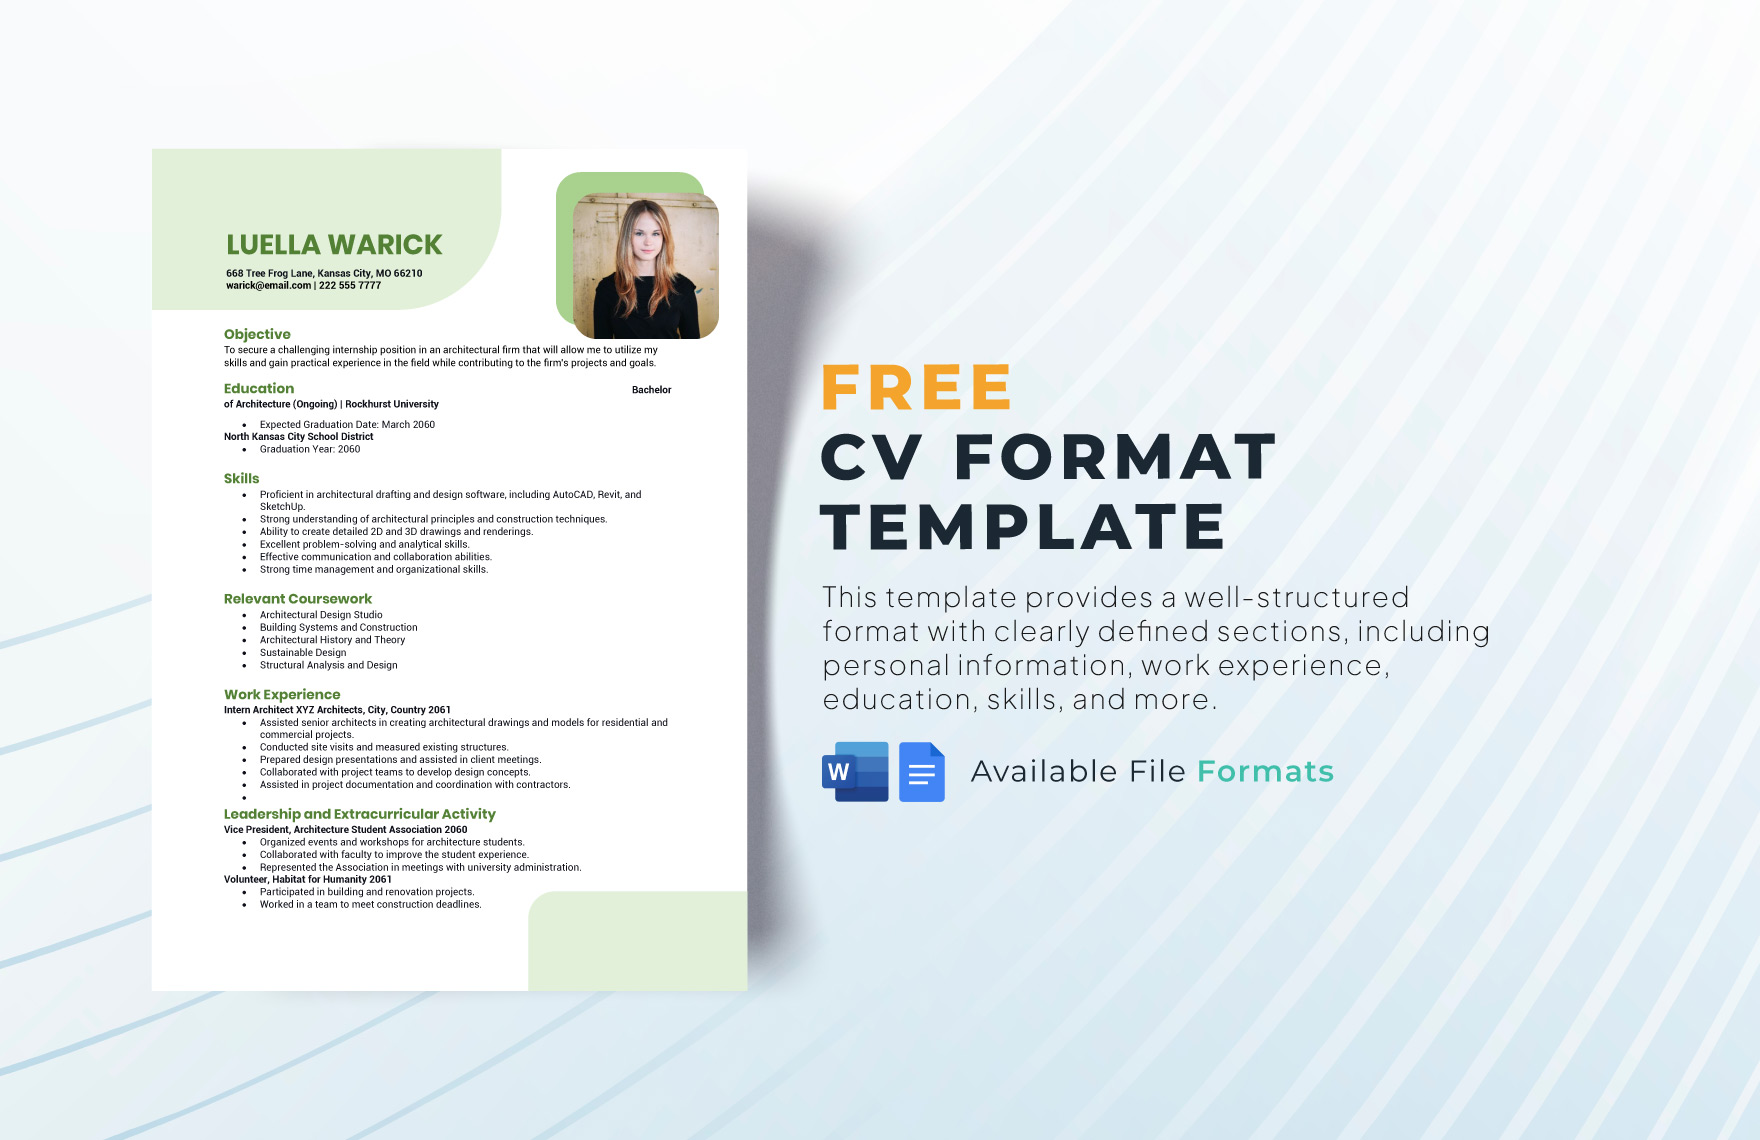 CV Format Template